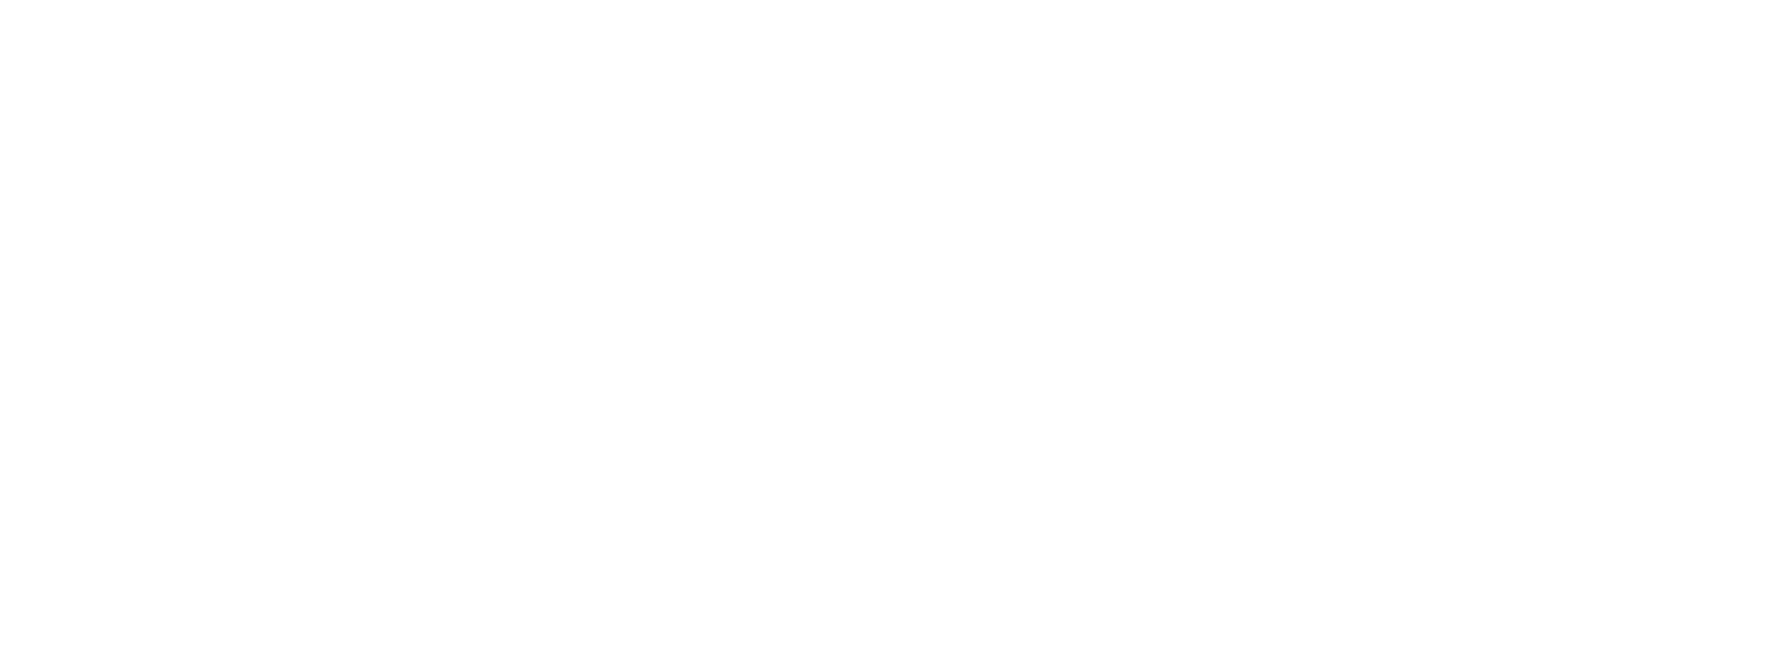 A Christmas Open House logo